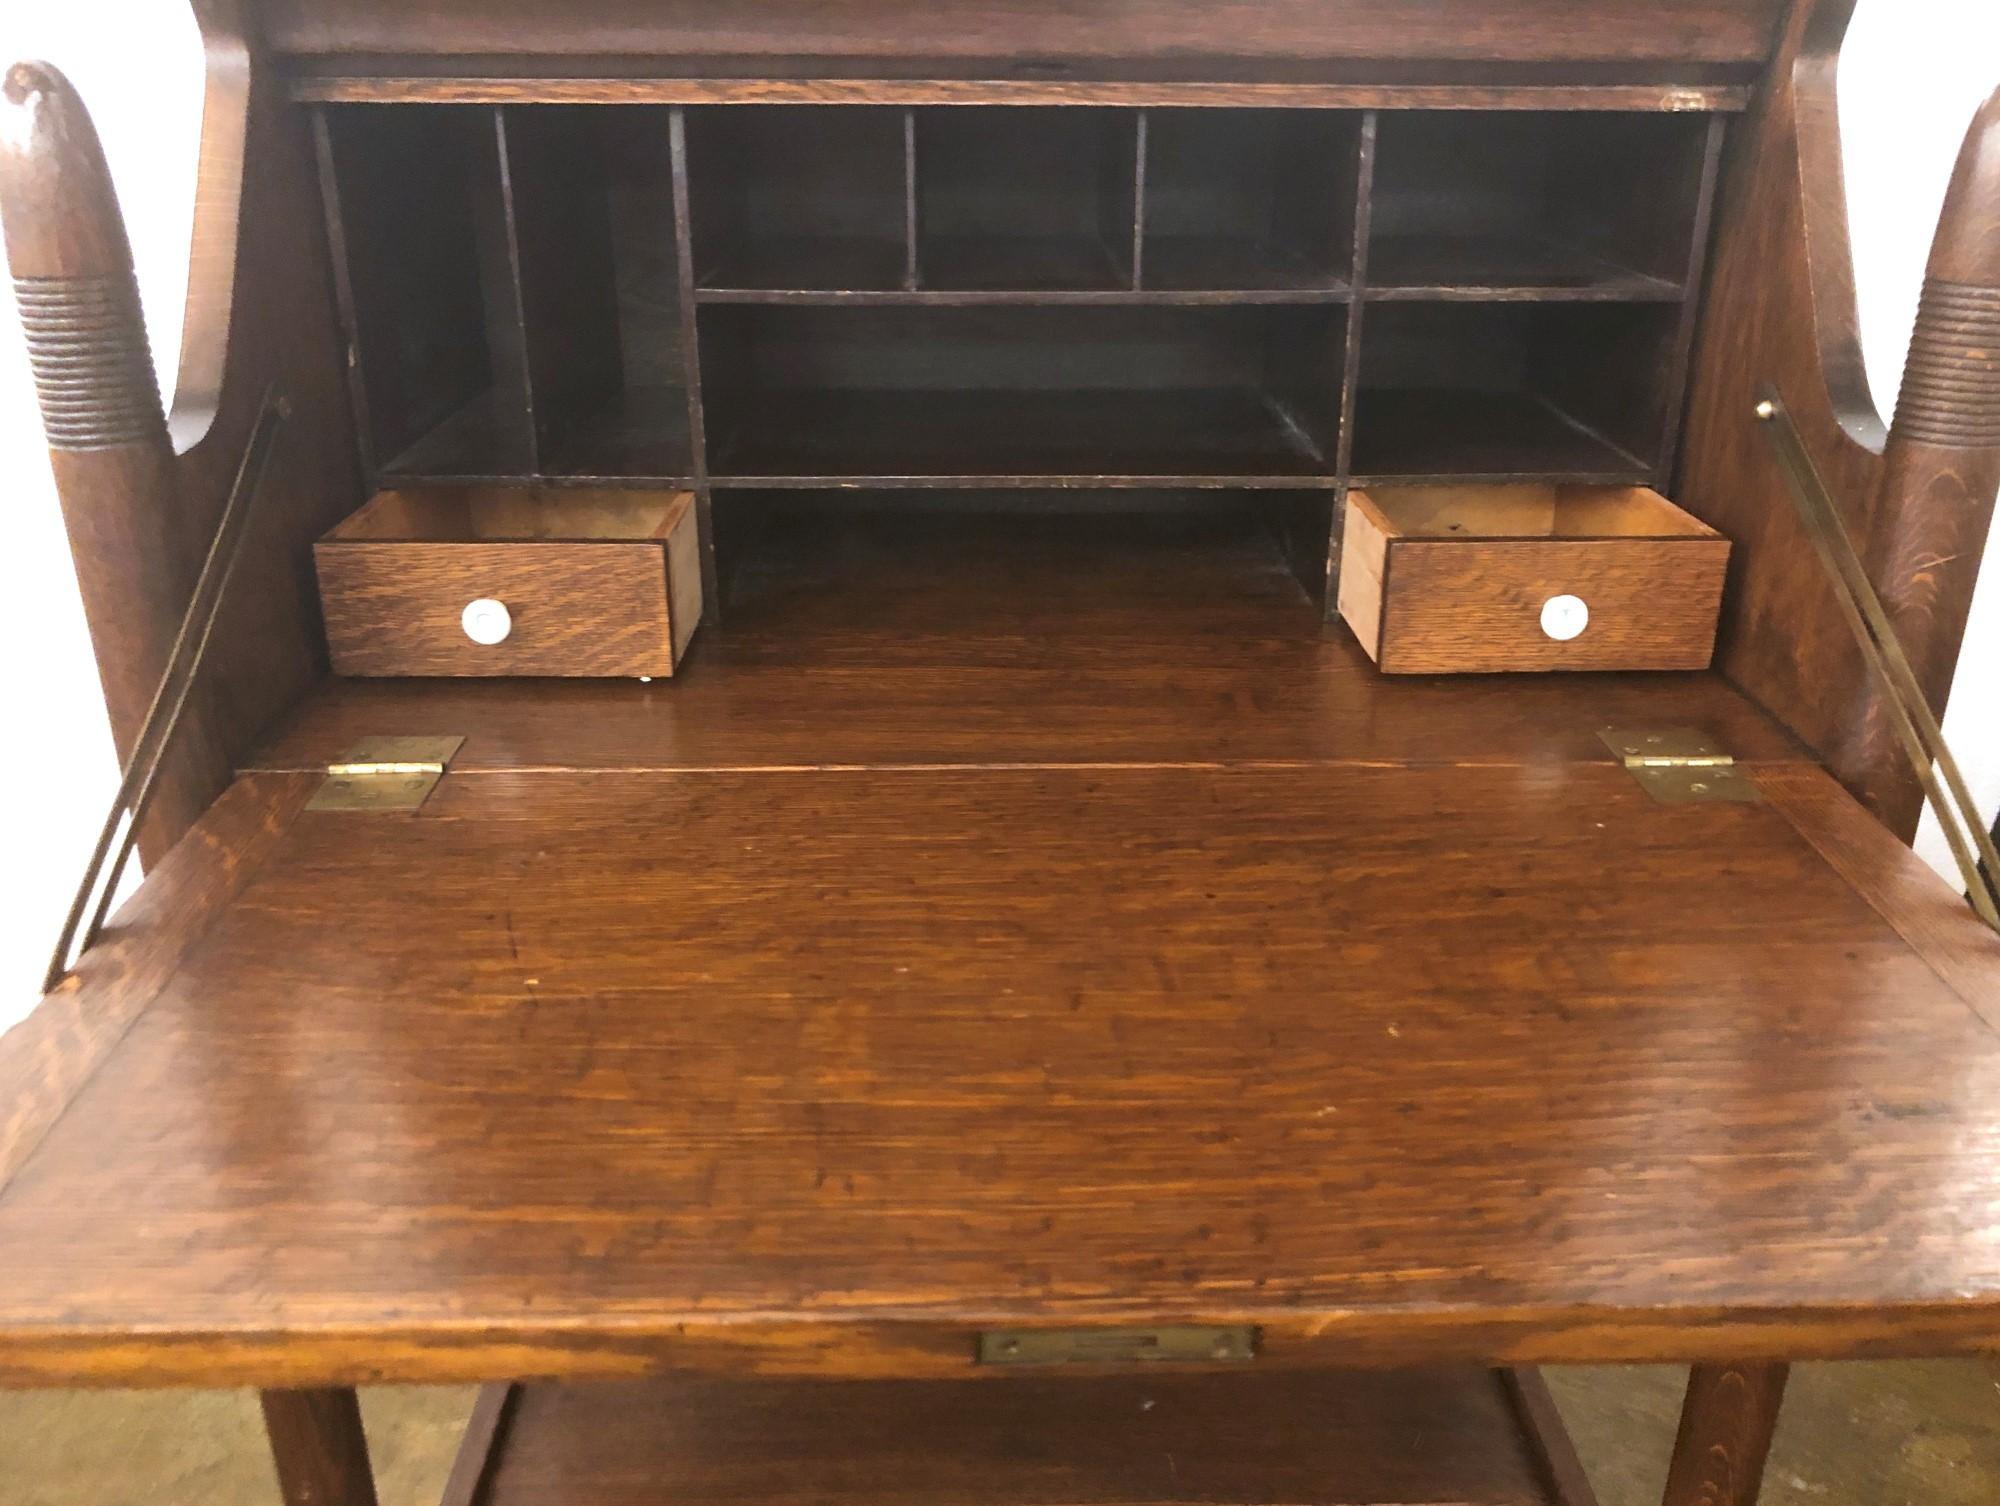 Mirrored Oak Secretary Desk w/ Drawers & Cabinet Space, Early 1900s 5